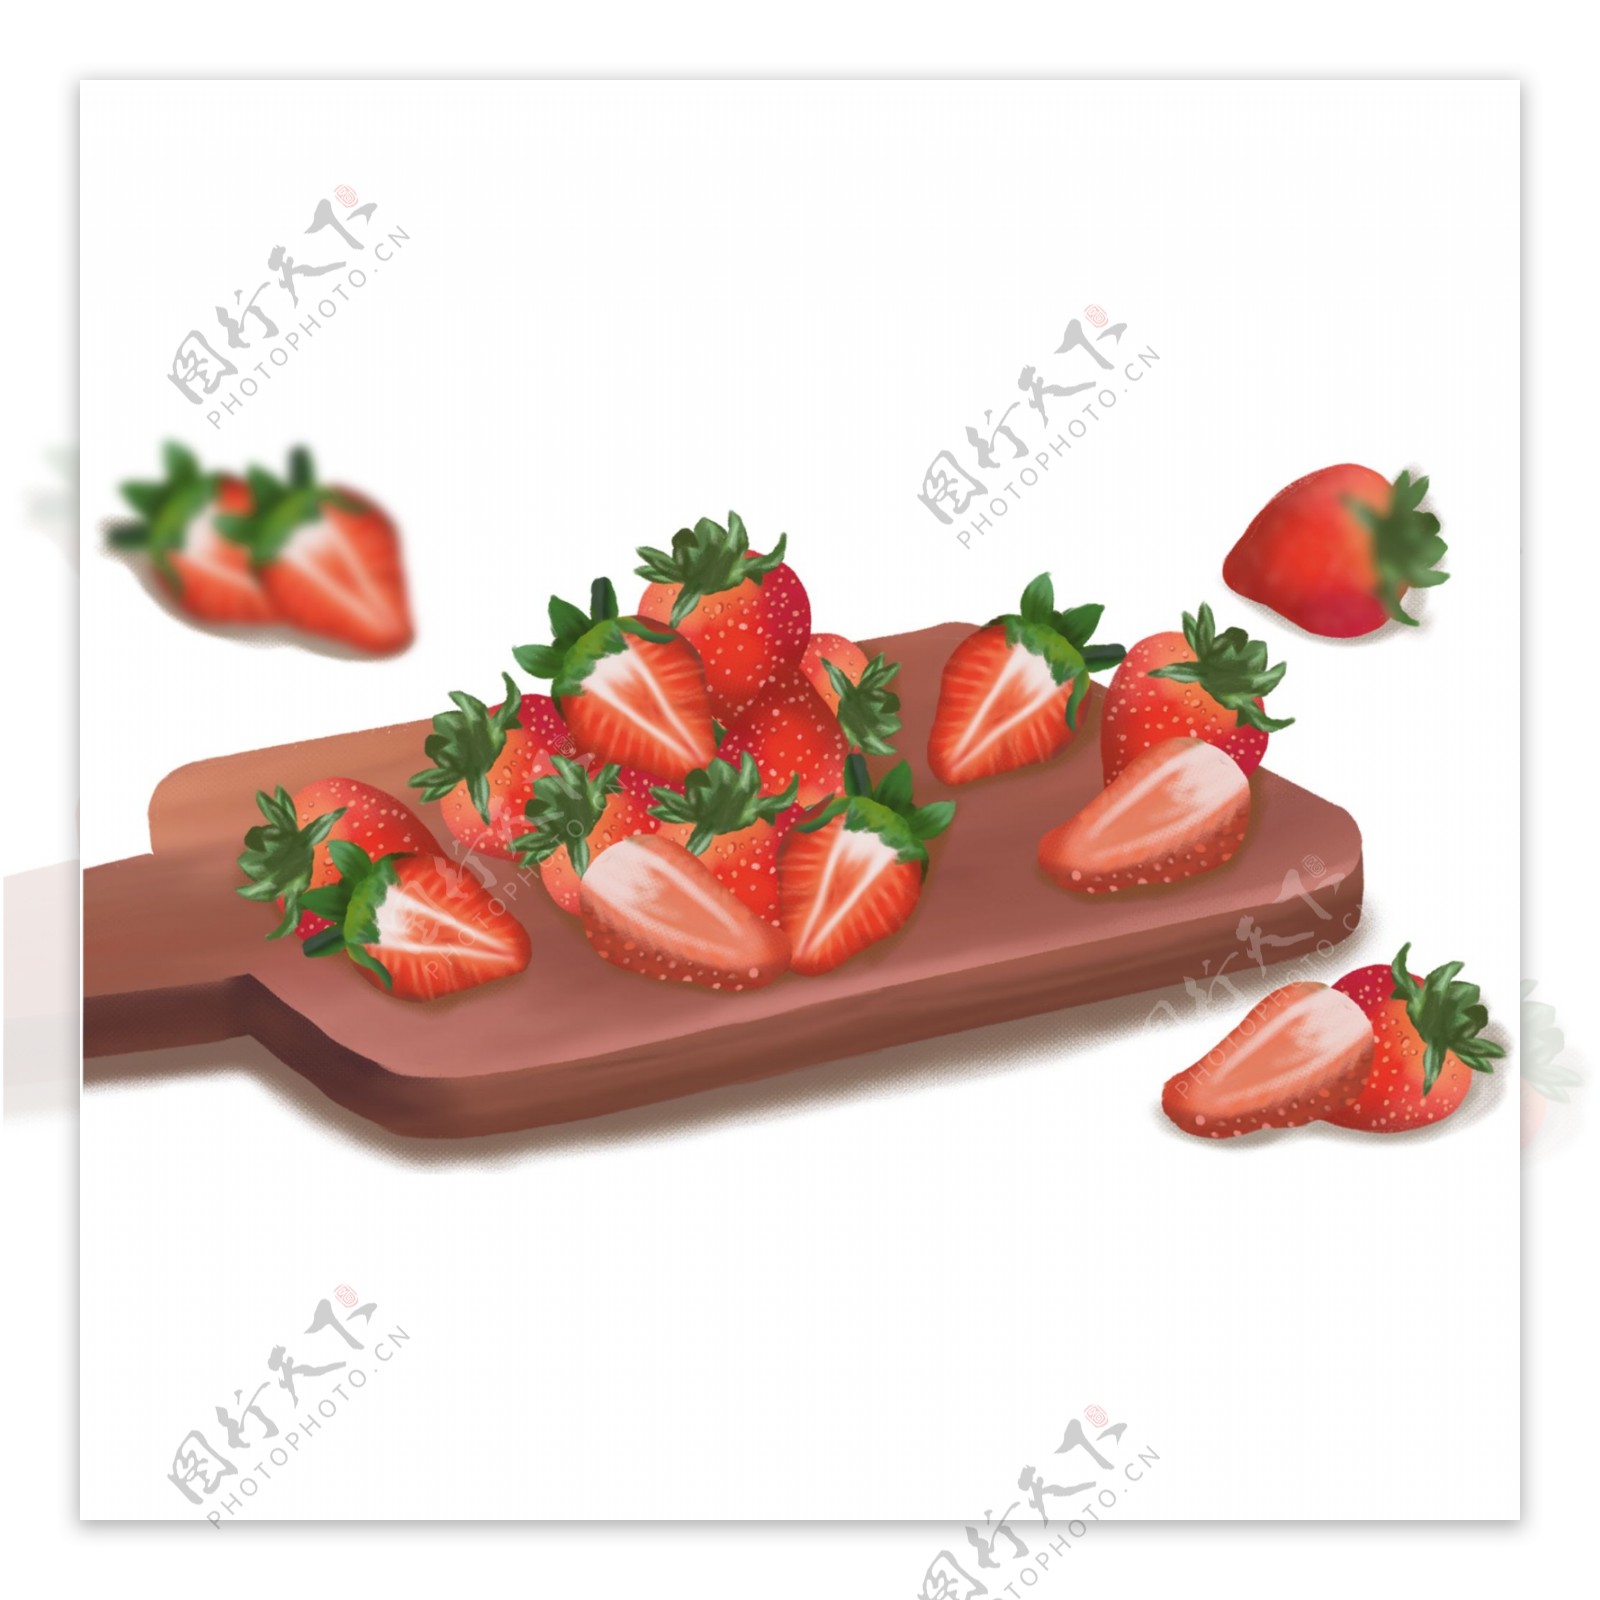 手绘案板上的新鲜草莓元素